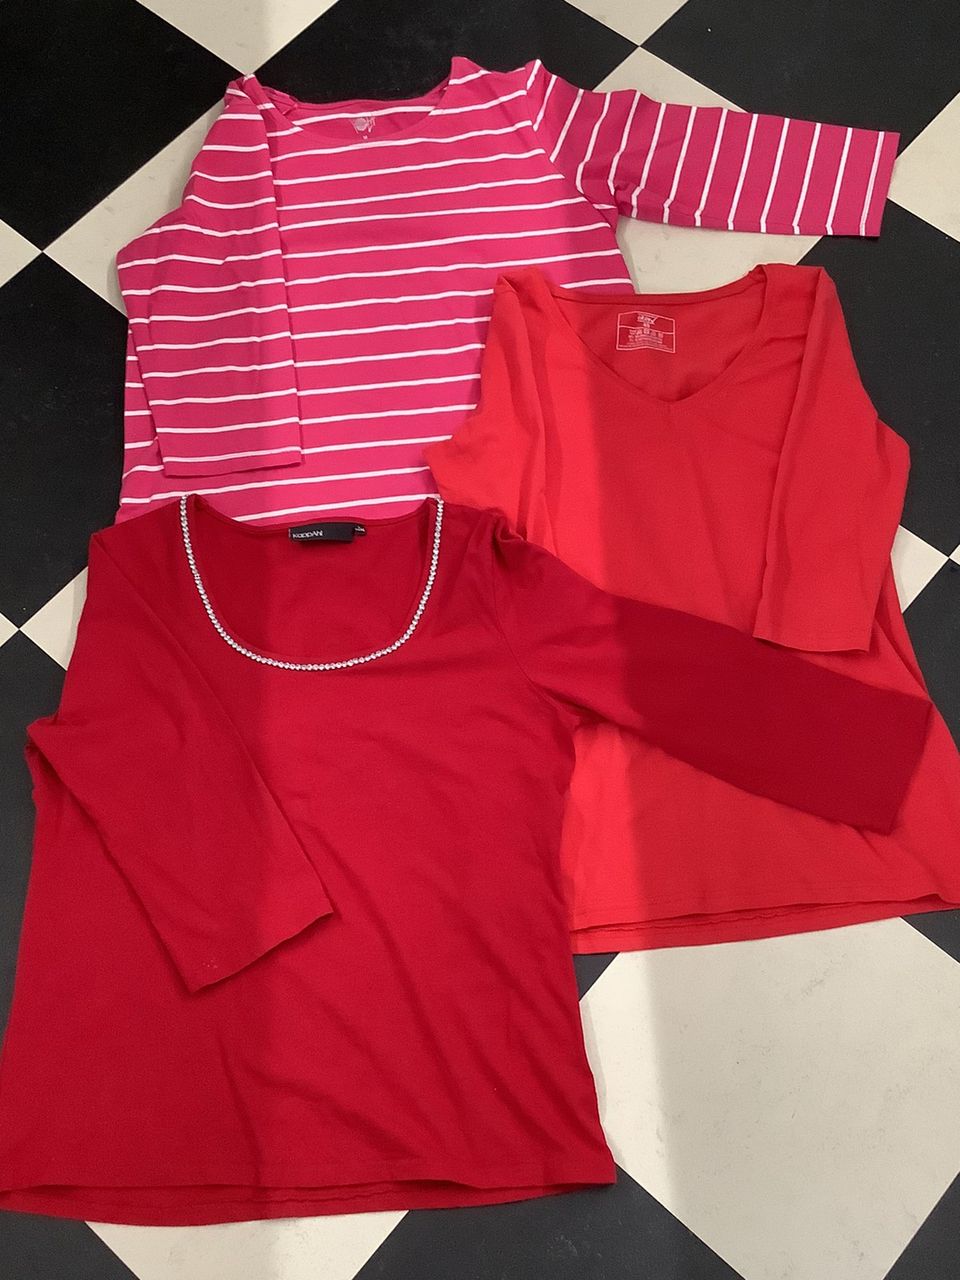 Naisten T-paita, punainen, 3 kappaletta, uusi, uudenveroinen